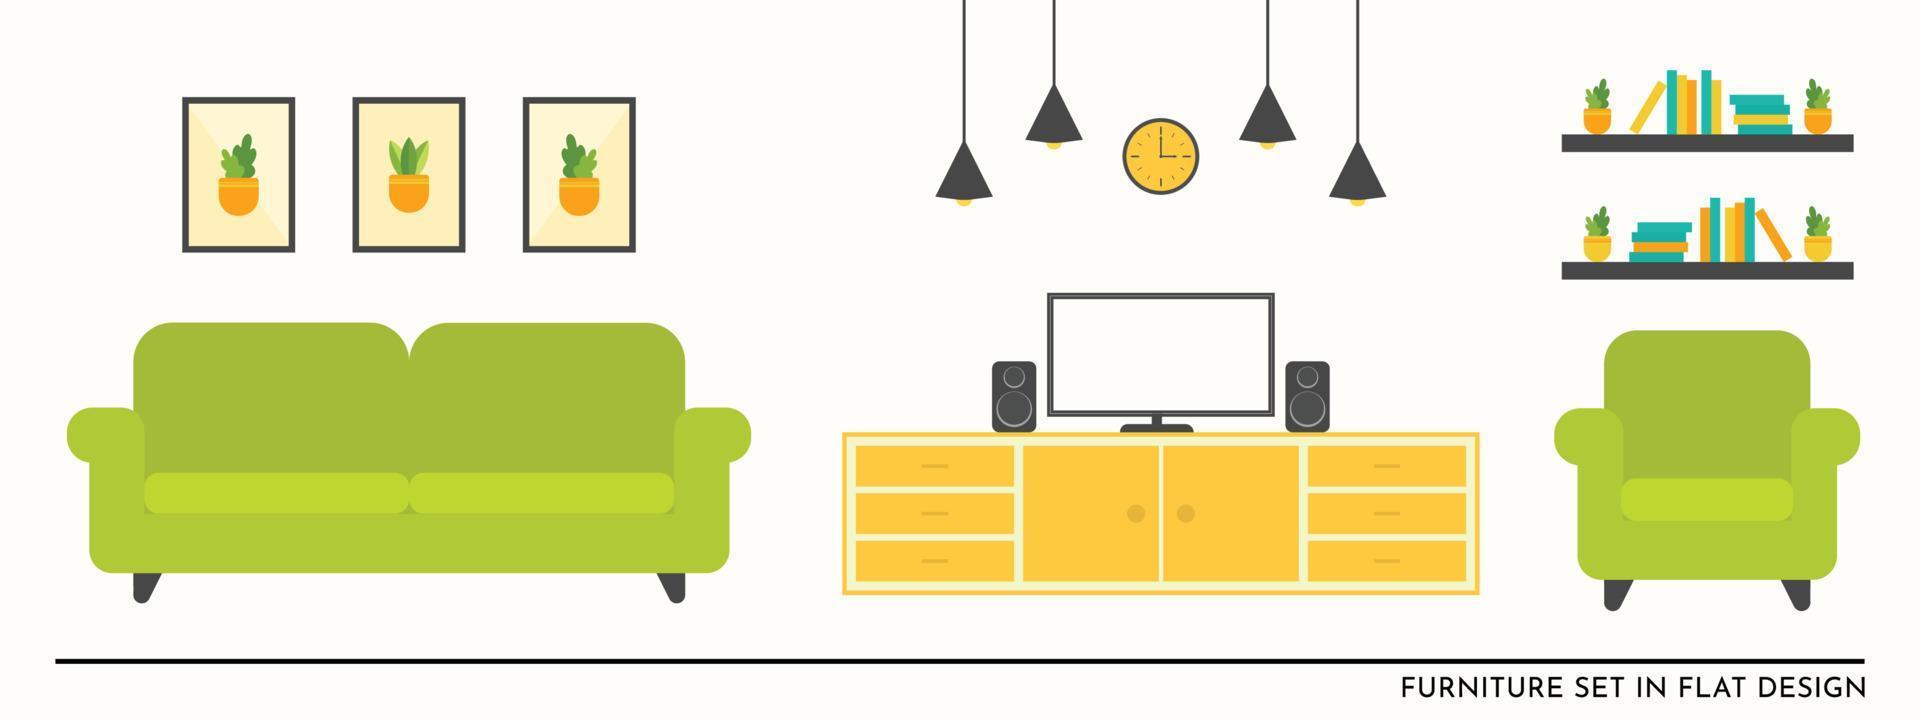 platt möbelset vektor för vardagsrum illustration design i grön soffa och gult bord